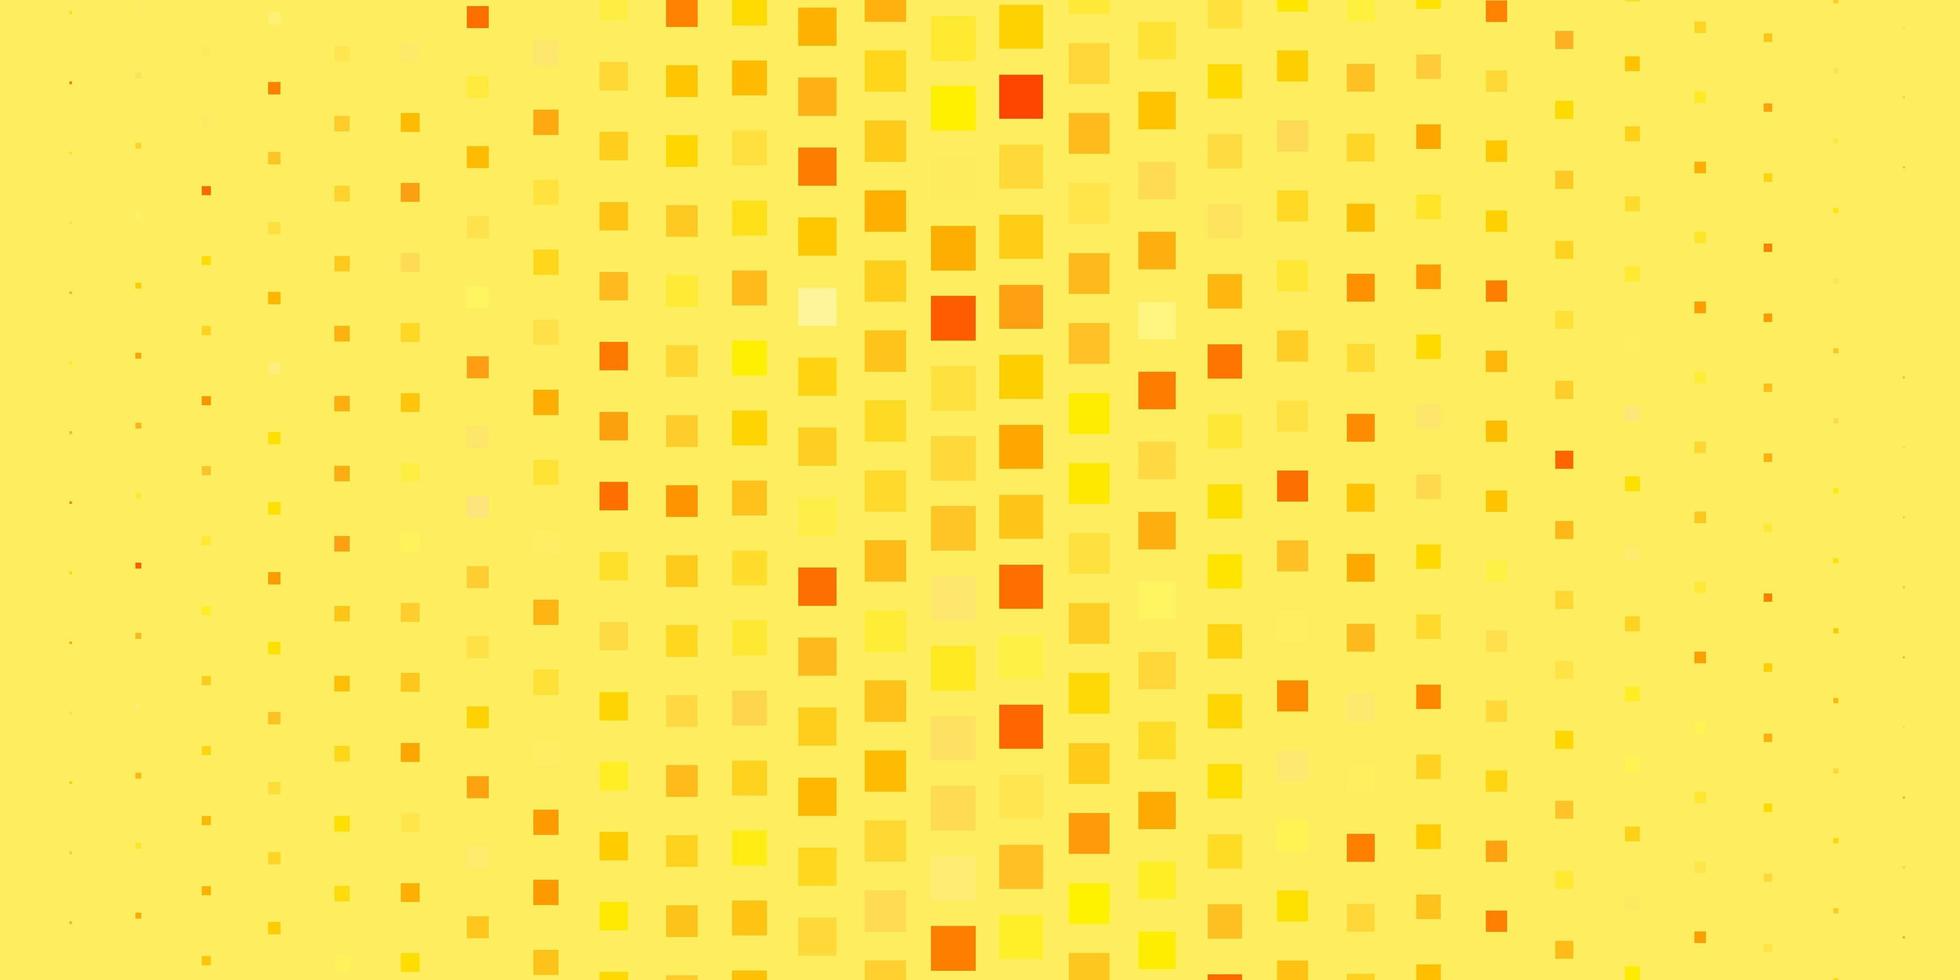 fond de vecteur orange clair dans un style polygonal. illustration colorée avec des rectangles et des carrés dégradés. modèle moderne pour votre page de destination.